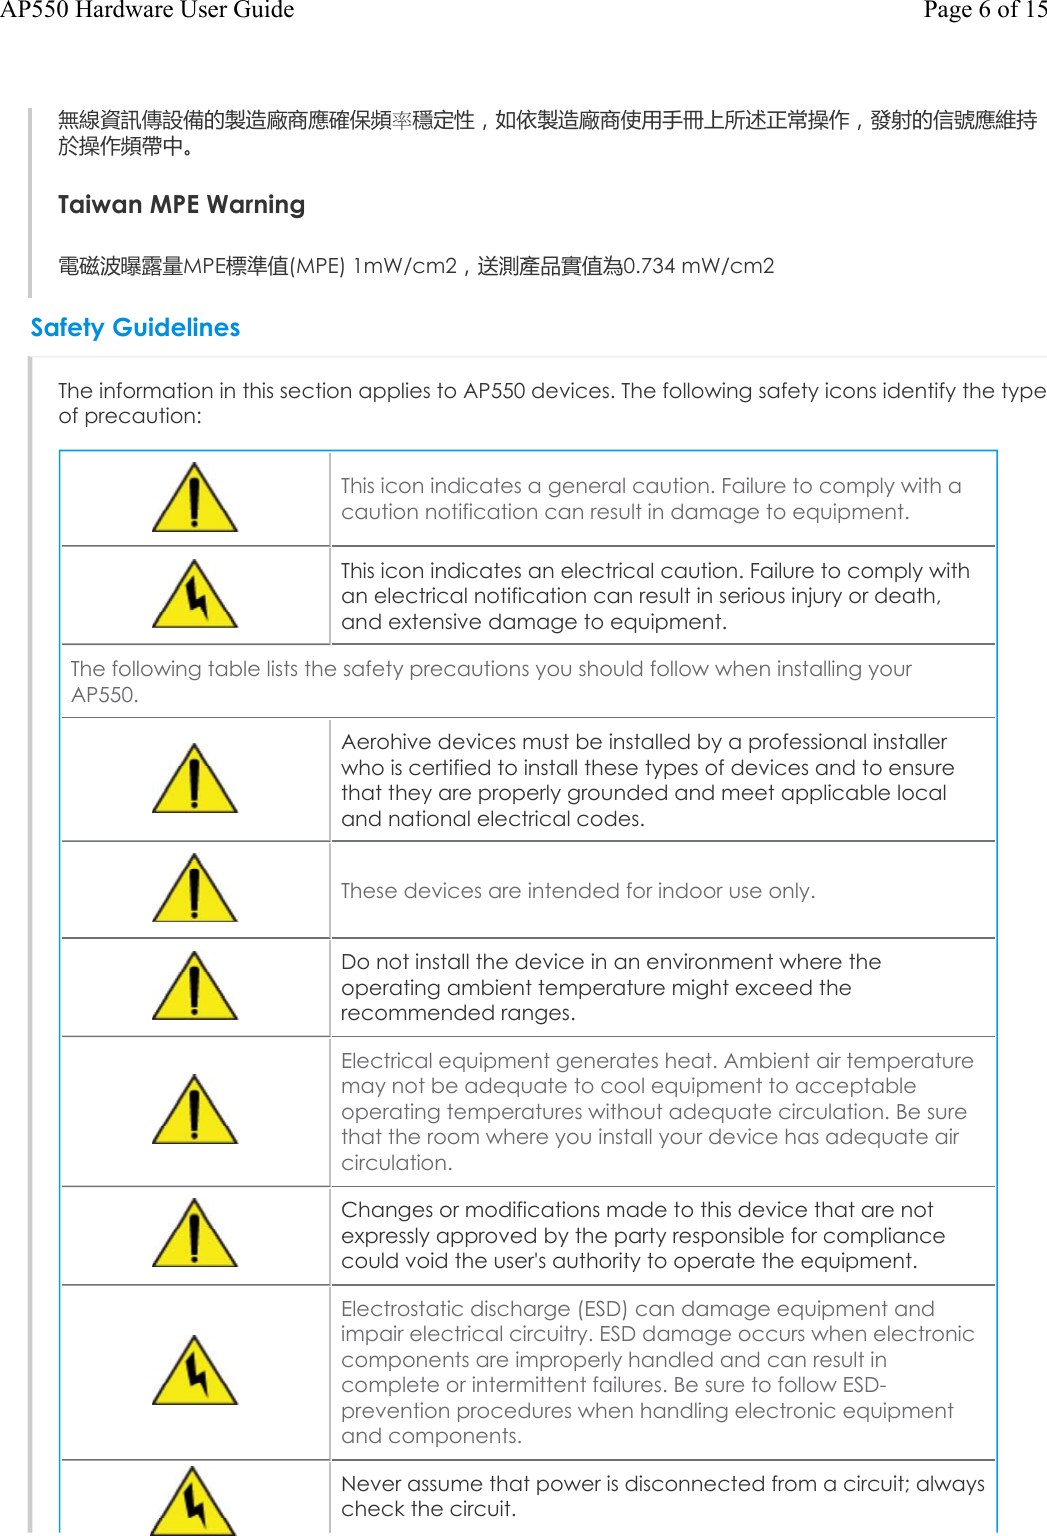 無線資訊傳設備的製造廠商應確保頻率穩定性，如依製造廠商使用手冊上所述正常操作，發射的信號應維持於操作頻帶中。Taiwan MPE Warning電磁波曝露量MPE標準值(MPE) 1mW/cm2，送測產品實值為0.734 mW/cm2Safety GuidelinesThe information in this section applies to AP550 devices. The following safety icons identify the type of precaution:This icon indicates a general caution. Failure to comply with a caution notification can result in damage to equipment.This icon indicates an electrical caution. Failure to comply with an electrical notification can result in serious injury or death, and extensive damage to equipment.The following table lists the safety precautions you should follow when installing your AP550.Aerohive devices must be installed by a professional installer who is certified to install these types of devices and to ensure that they are properly grounded and meet applicable local and national electrical codes.These devices are intended for indoor use only.Do not install the device in an environment where the operating ambient temperature might exceed the recommended ranges.Electrical equipment generates heat. Ambient air temperature may not be adequate to cool equipment to acceptable operating temperatures without adequate circulation. Be sure that the room where you install your device has adequate air circulation.Changes or modifications made to this device that are not expressly approved by the party responsible for compliance could void the user&apos;s authority to operate the equipment.Electrostatic discharge (ESD) can damage equipment and impair electrical circuitry. ESD damage occurs when electronic components are improperly handled and can result in complete or intermittent failures. Be sure to follow ESD-prevention procedures when handling electronic equipment and components. Never assume that power is disconnected from a circuit; always check the circuit.Page 6 of 15AP550 Hardware User Guide